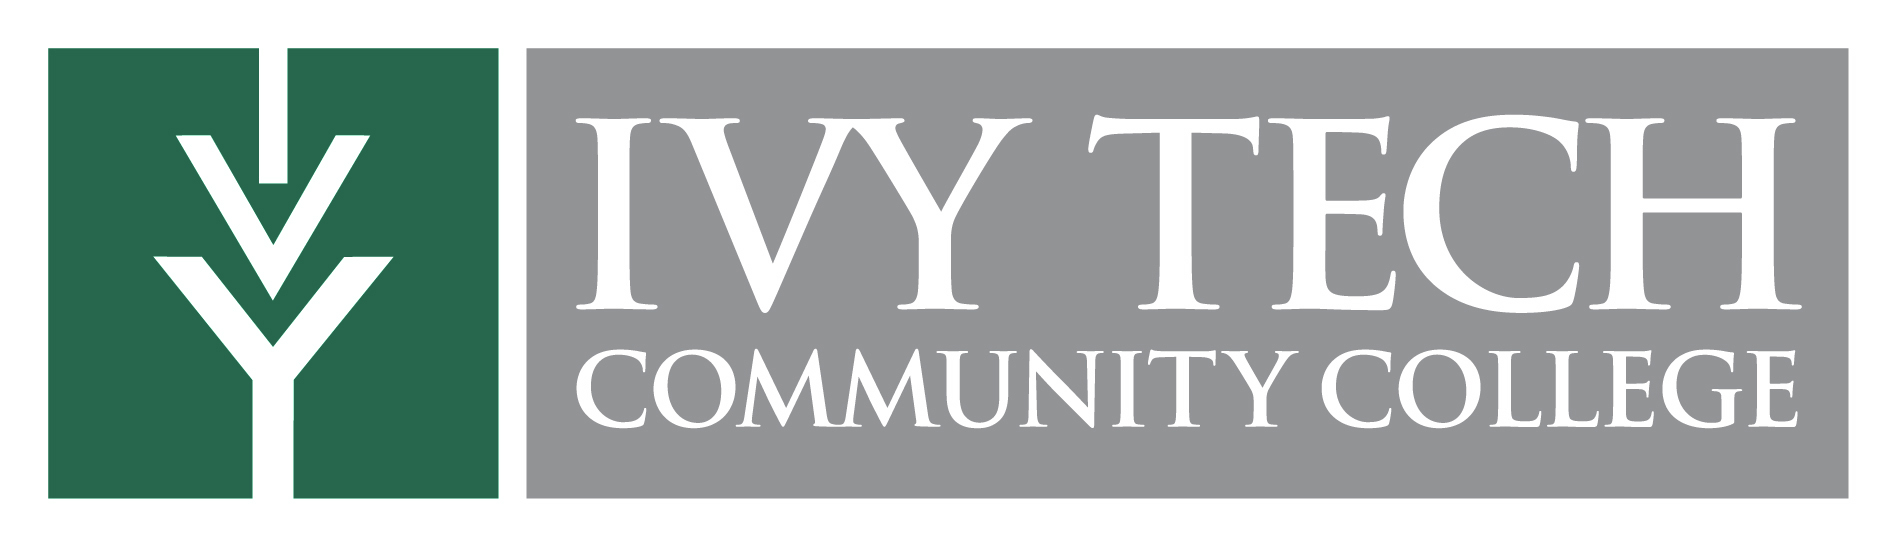 Ivy-Tech-logo.jpg